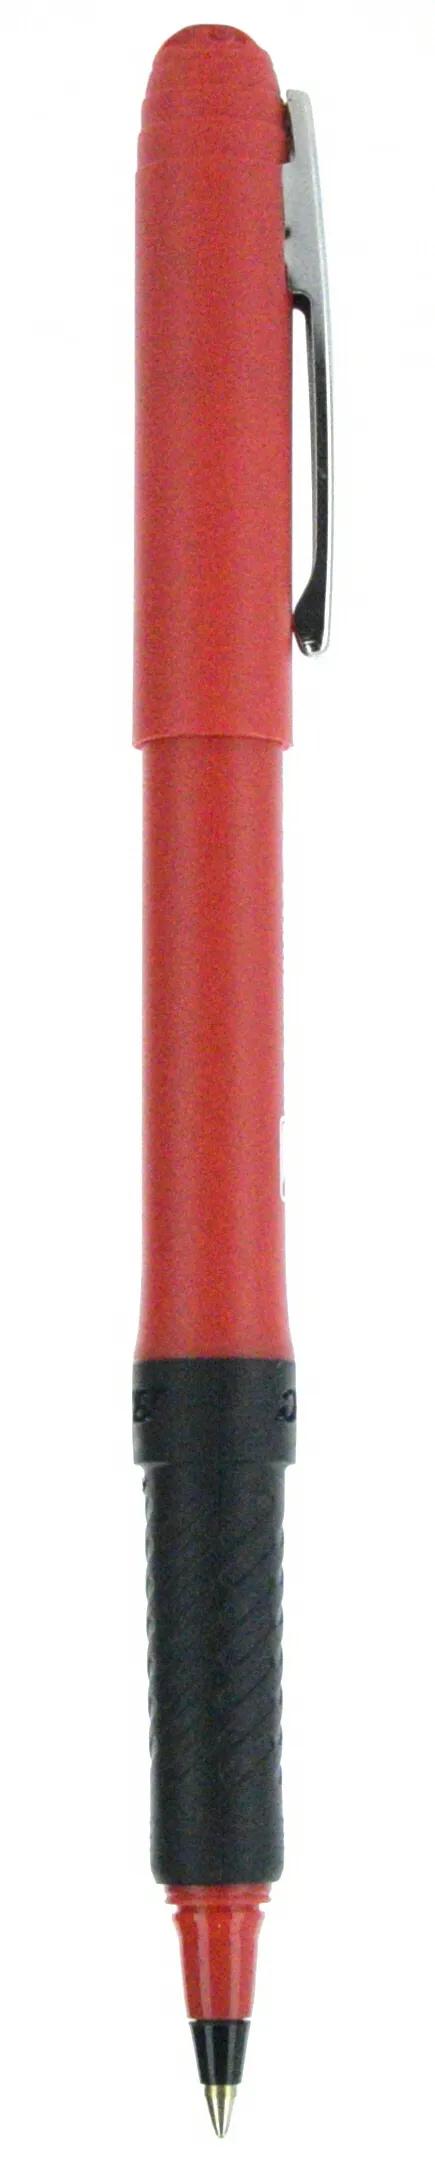 BIC® Grip Roller Pen 93 of 147